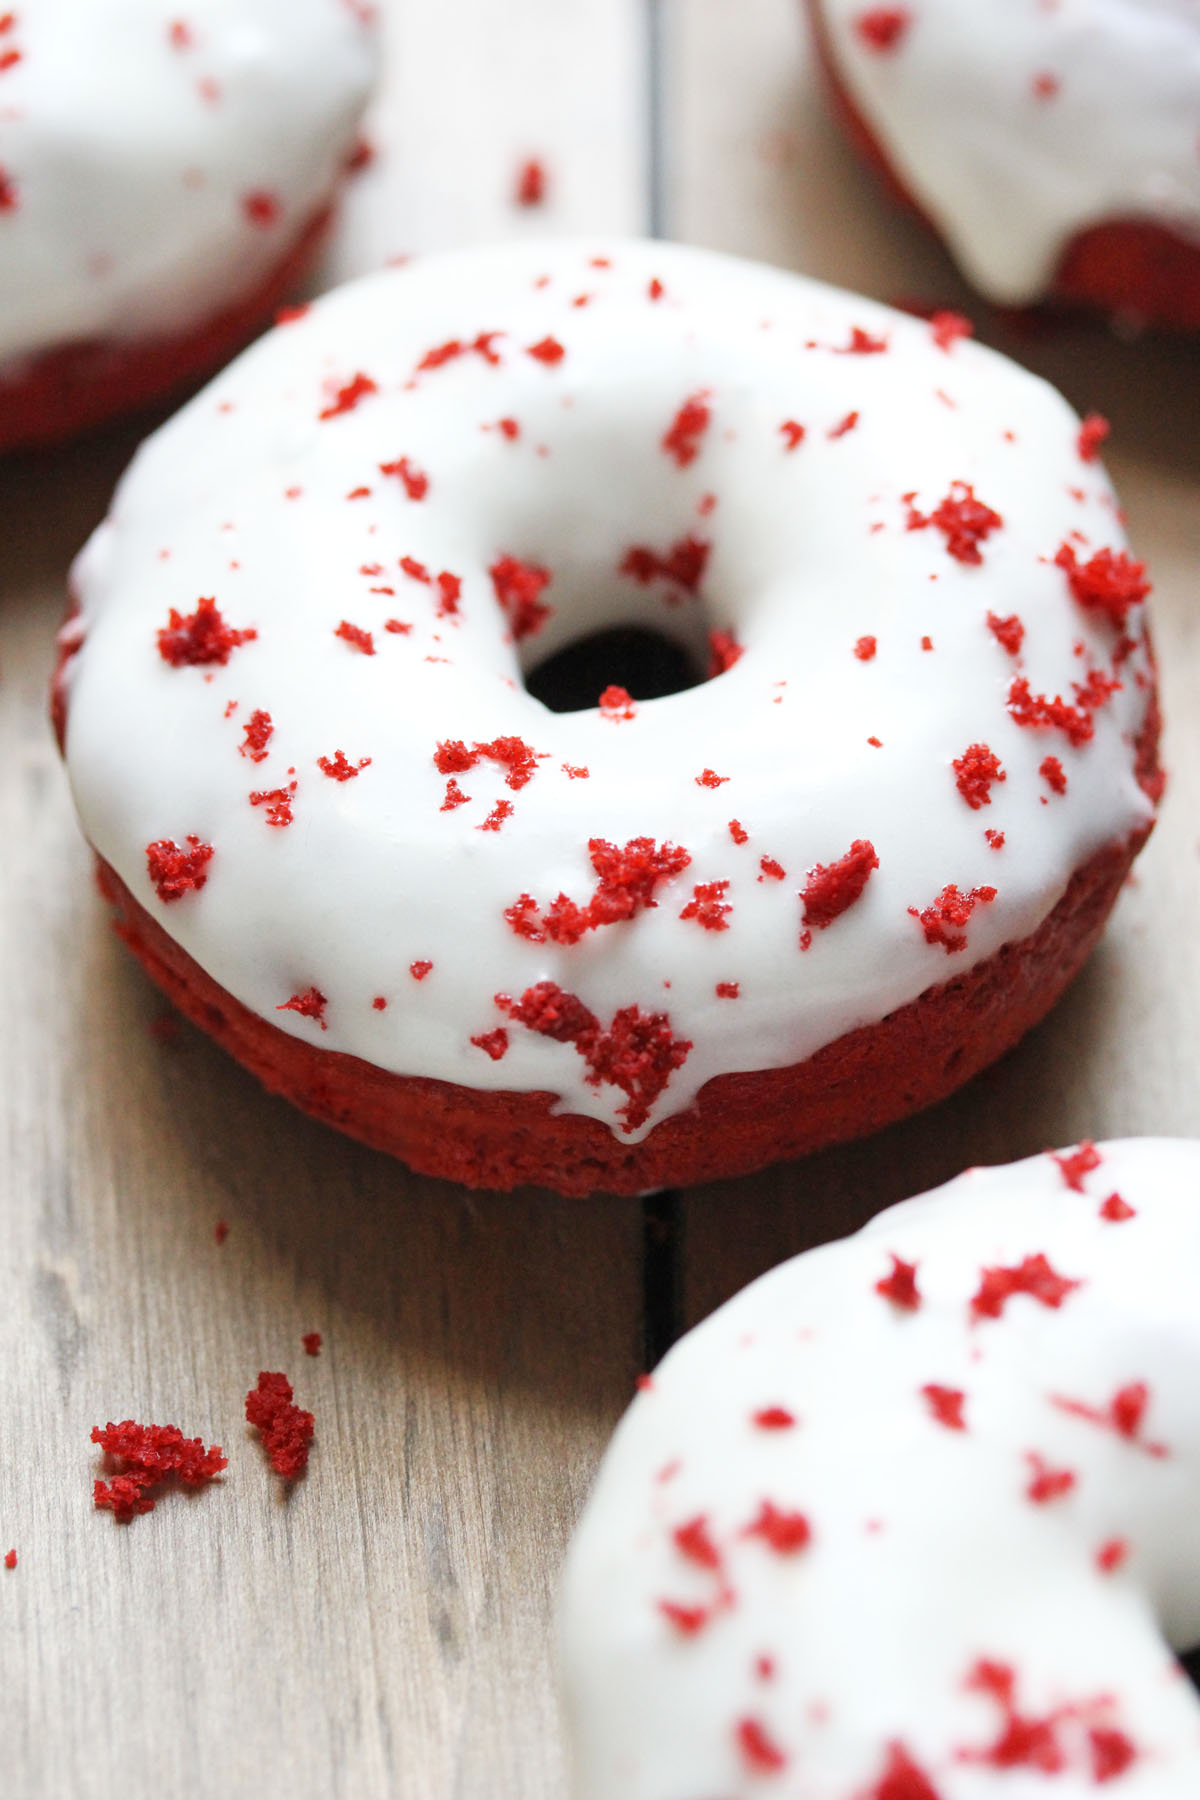 Baked Red Velvet Doughnuts